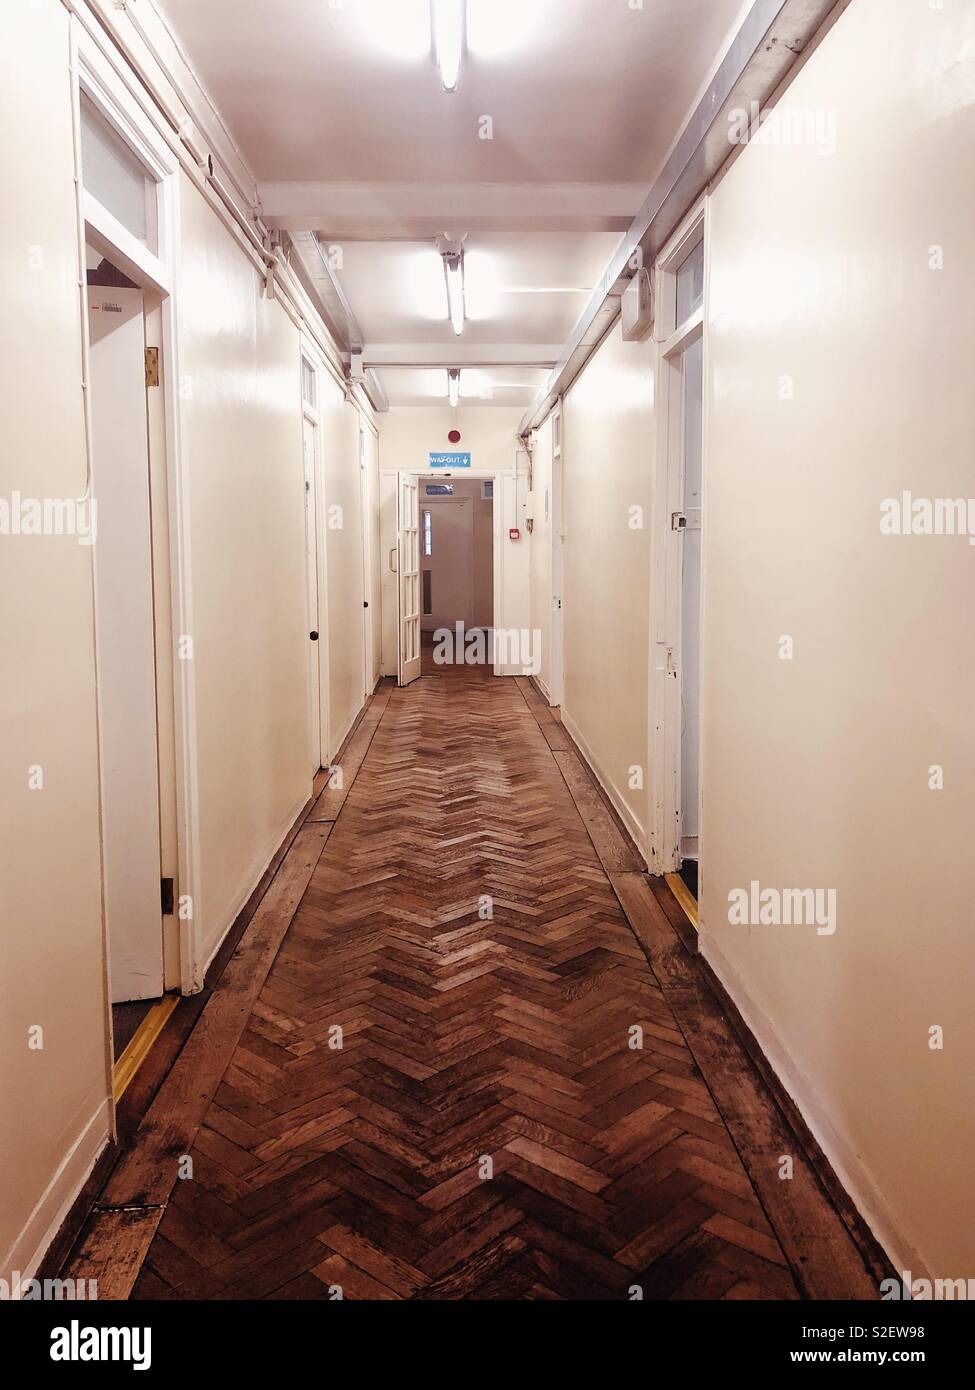 Corridoio usurato con pavimento in parquet e pareti dipinte di color crema con le porte aperte. Lit fluorescente con strisce di illuminazione Foto Stock